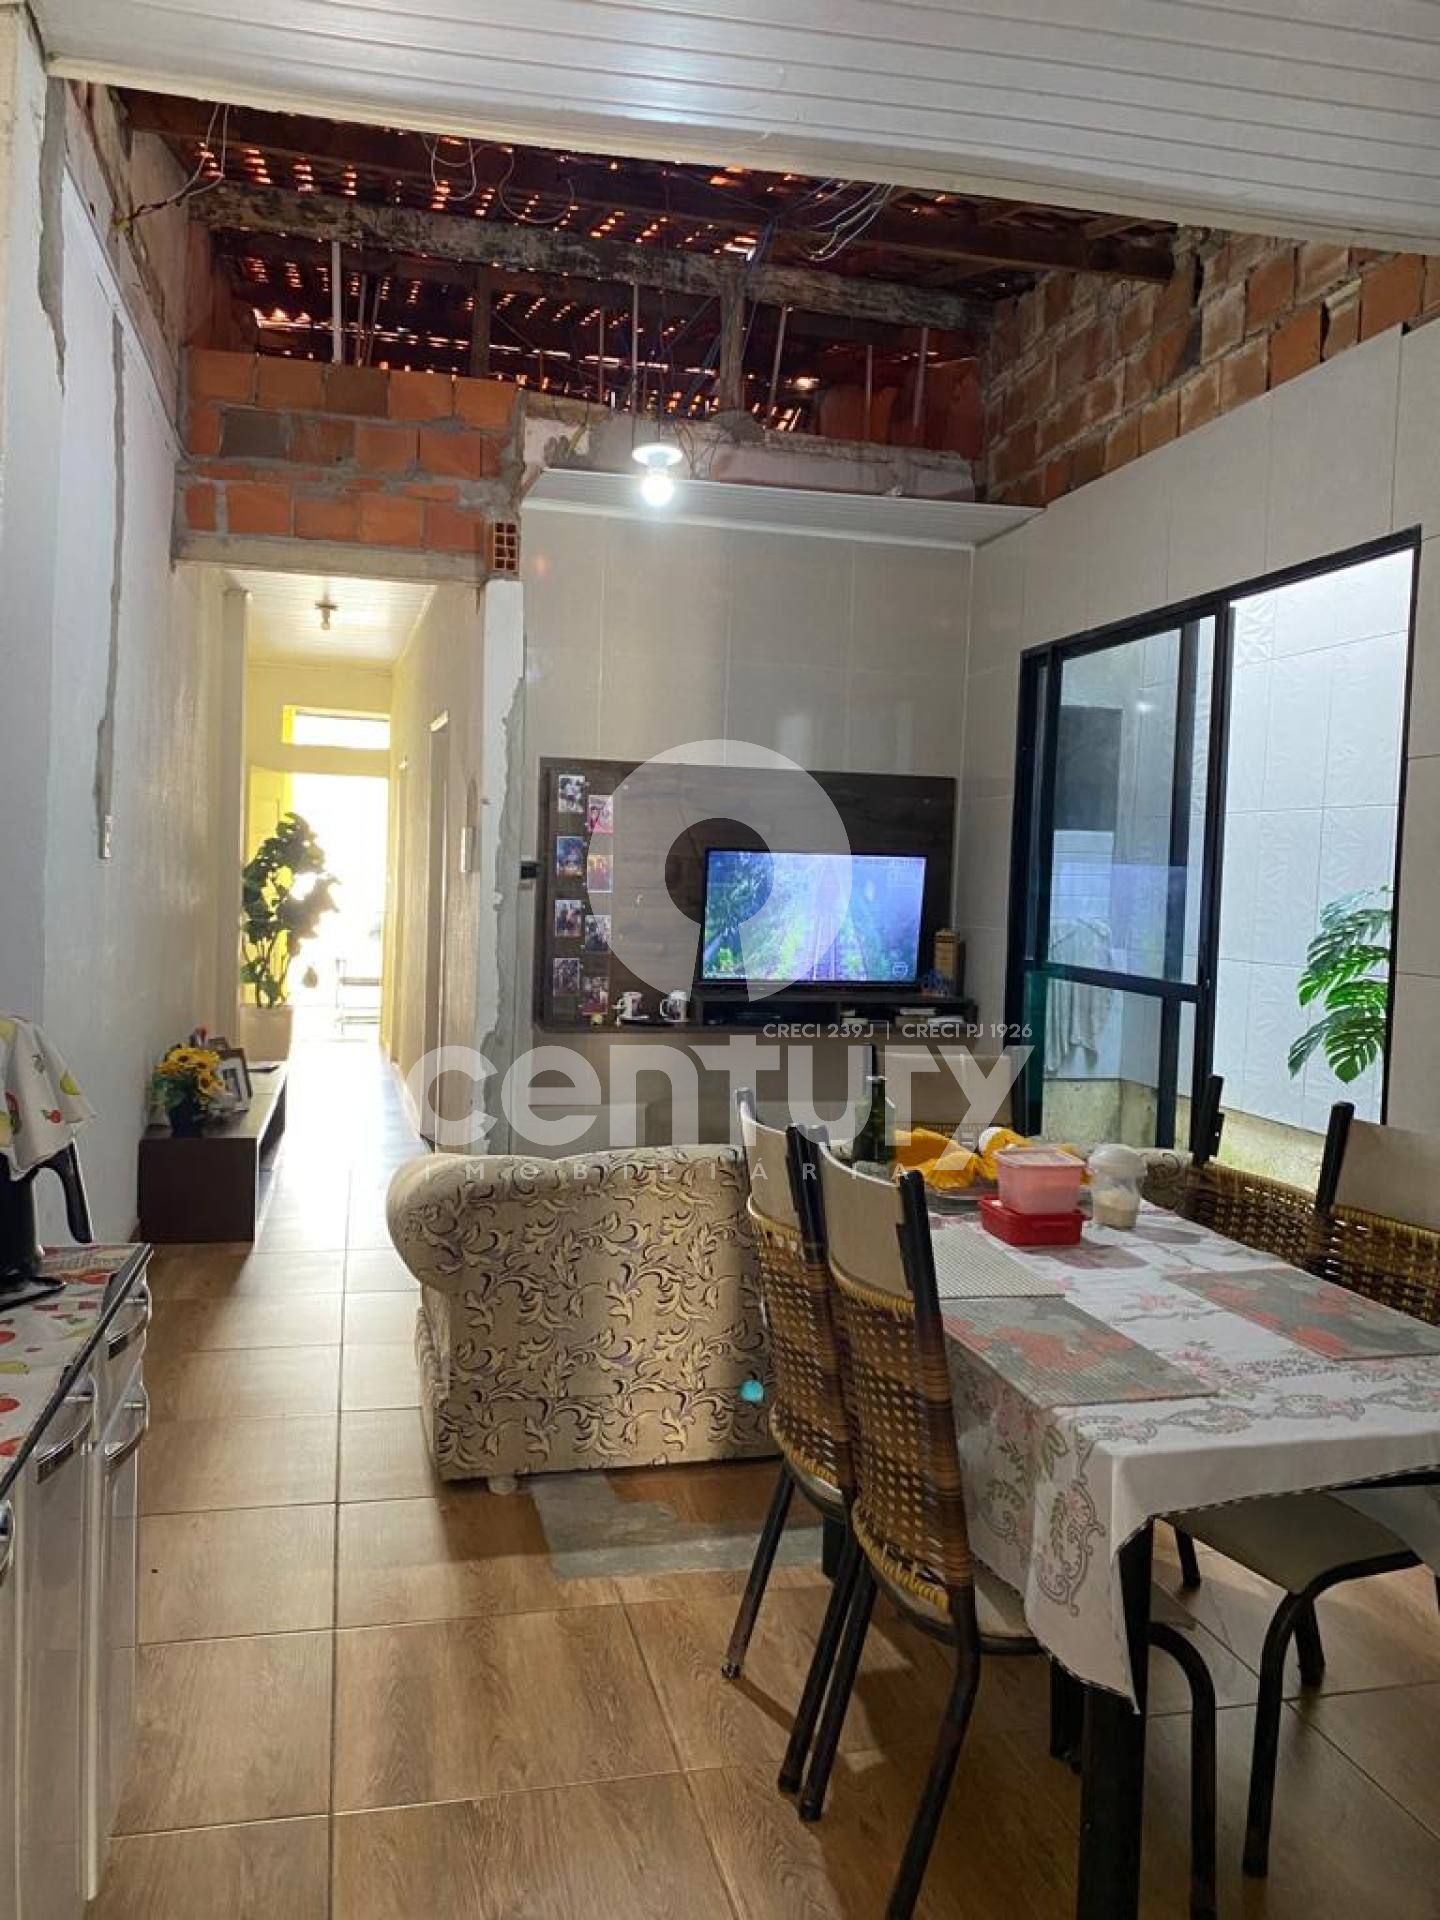 Casa Para Vender com 2 quartos no bairro Centro em Aracaju